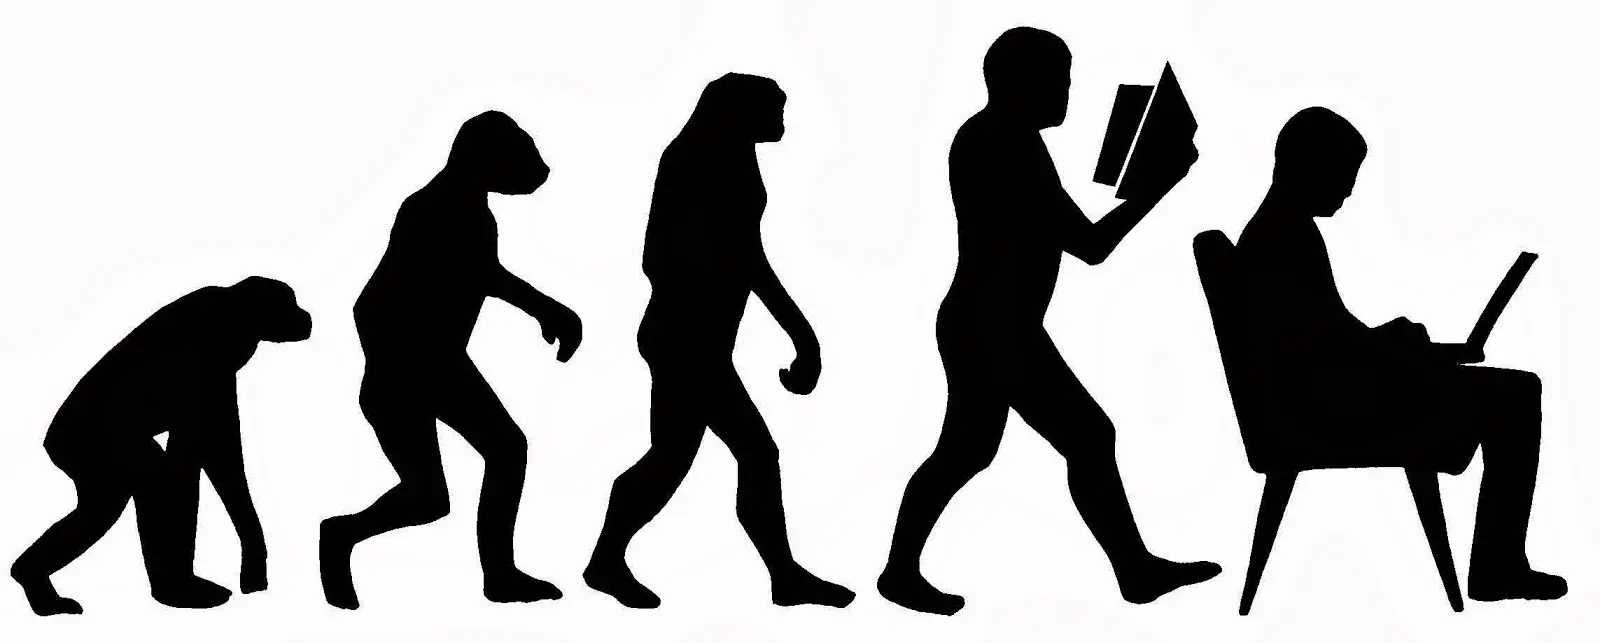 evolucionismo en psicologia - Que se entiende por el concepto de evolucionismo